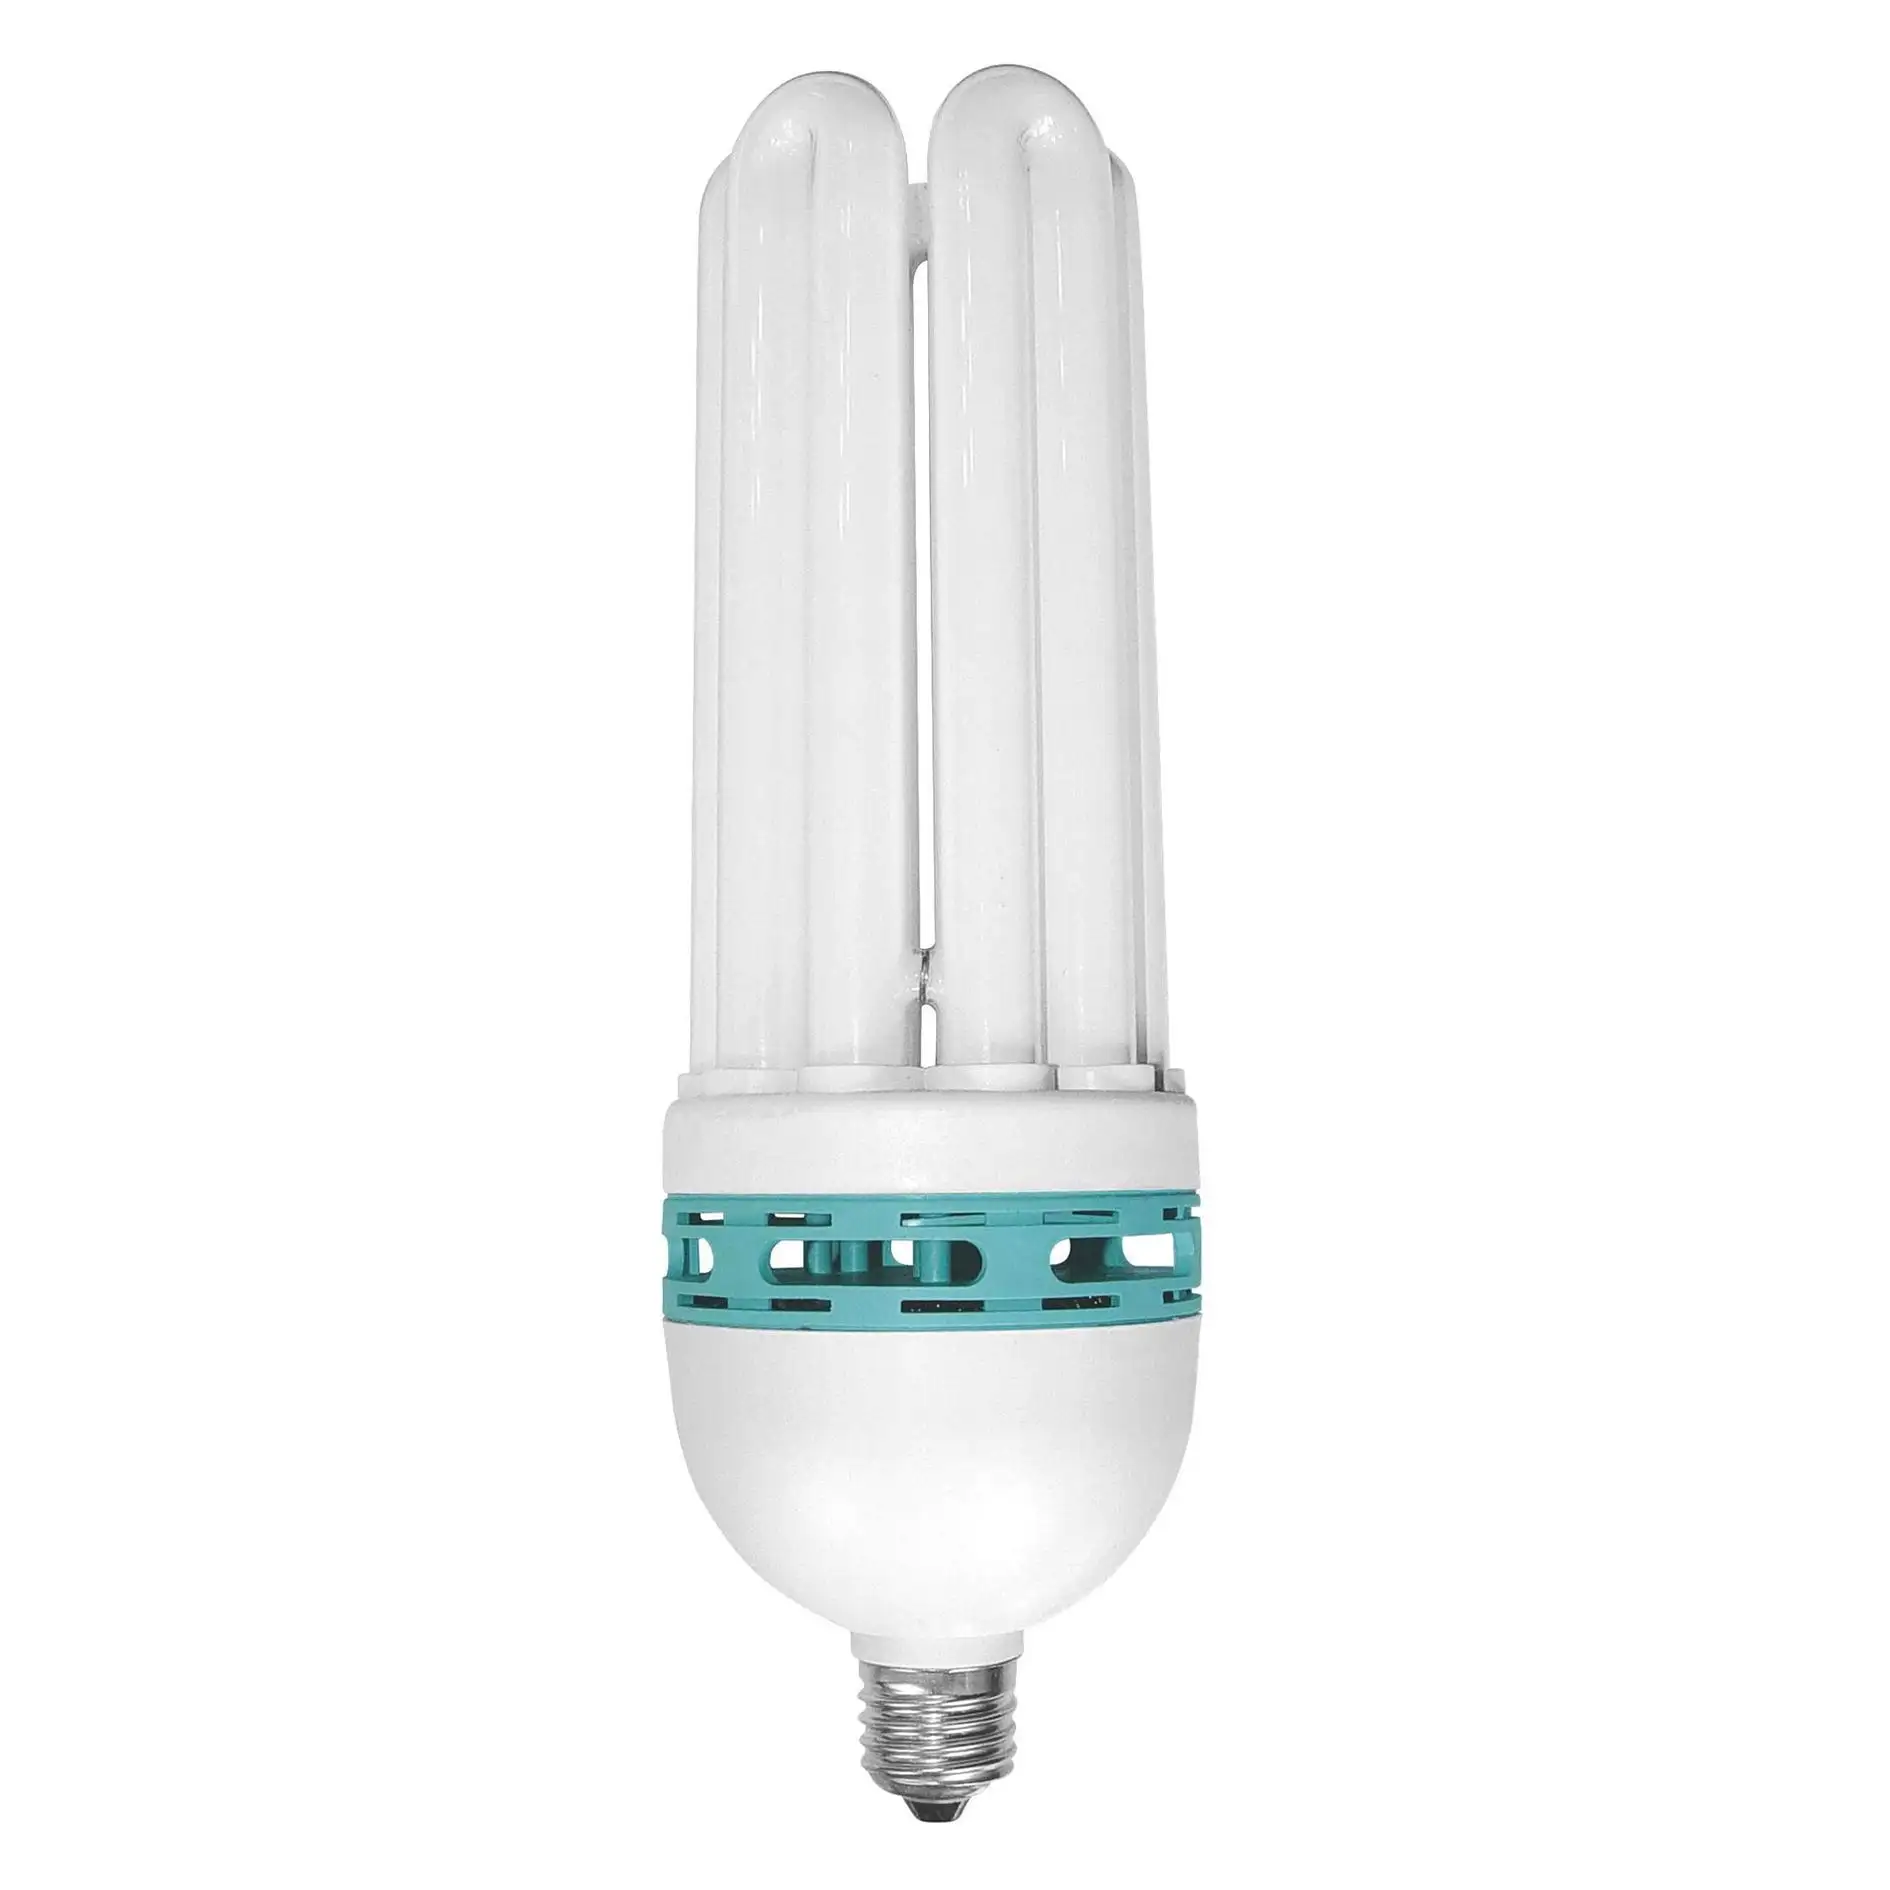 Elektrische lampen E39/E40 energie saver CFL licht kompakte leuchtstofflampe mit 6400k